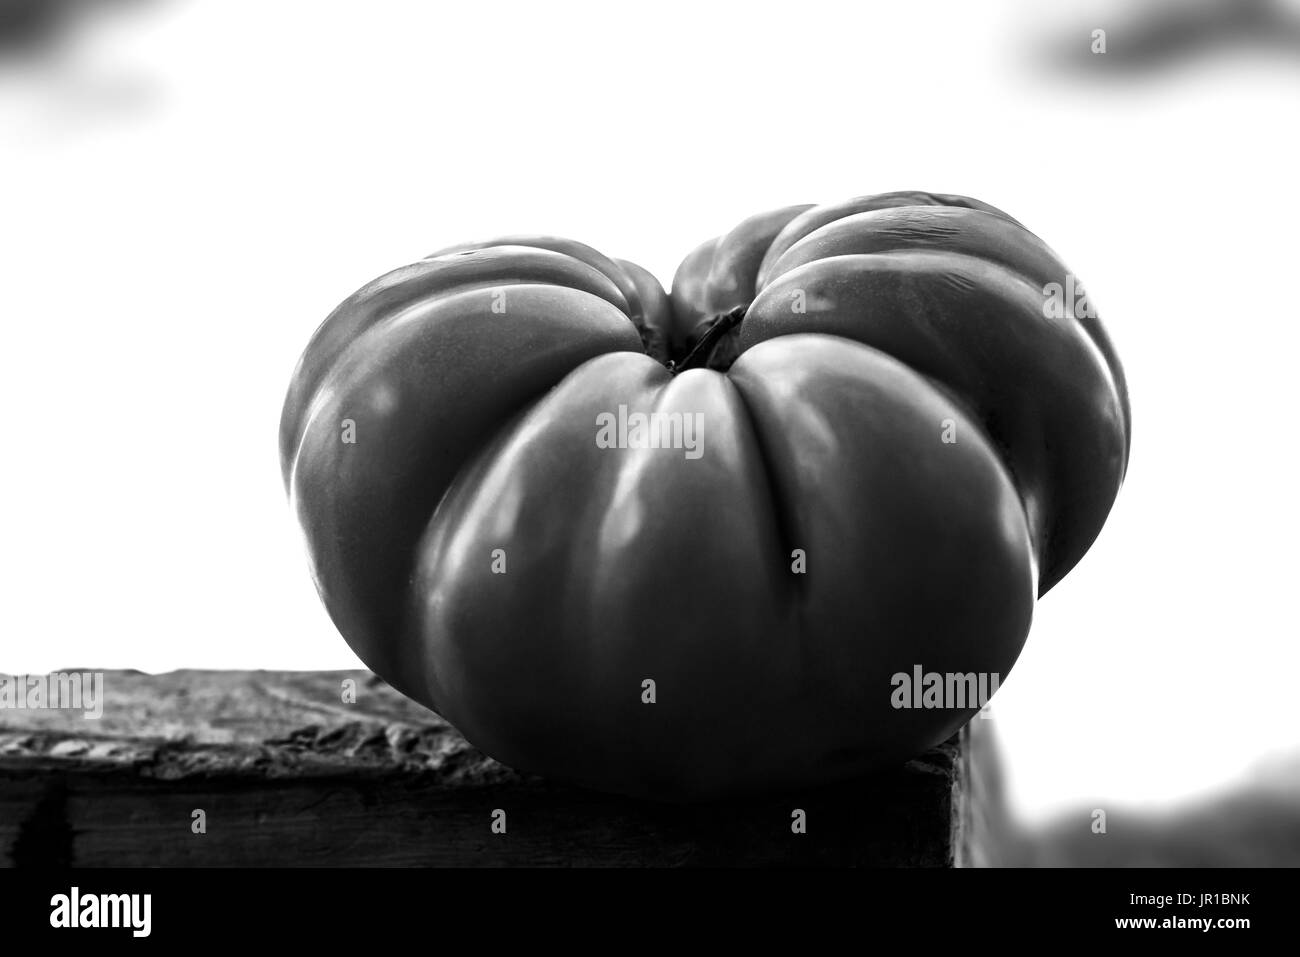 Heirloom Tomato Stock Photo